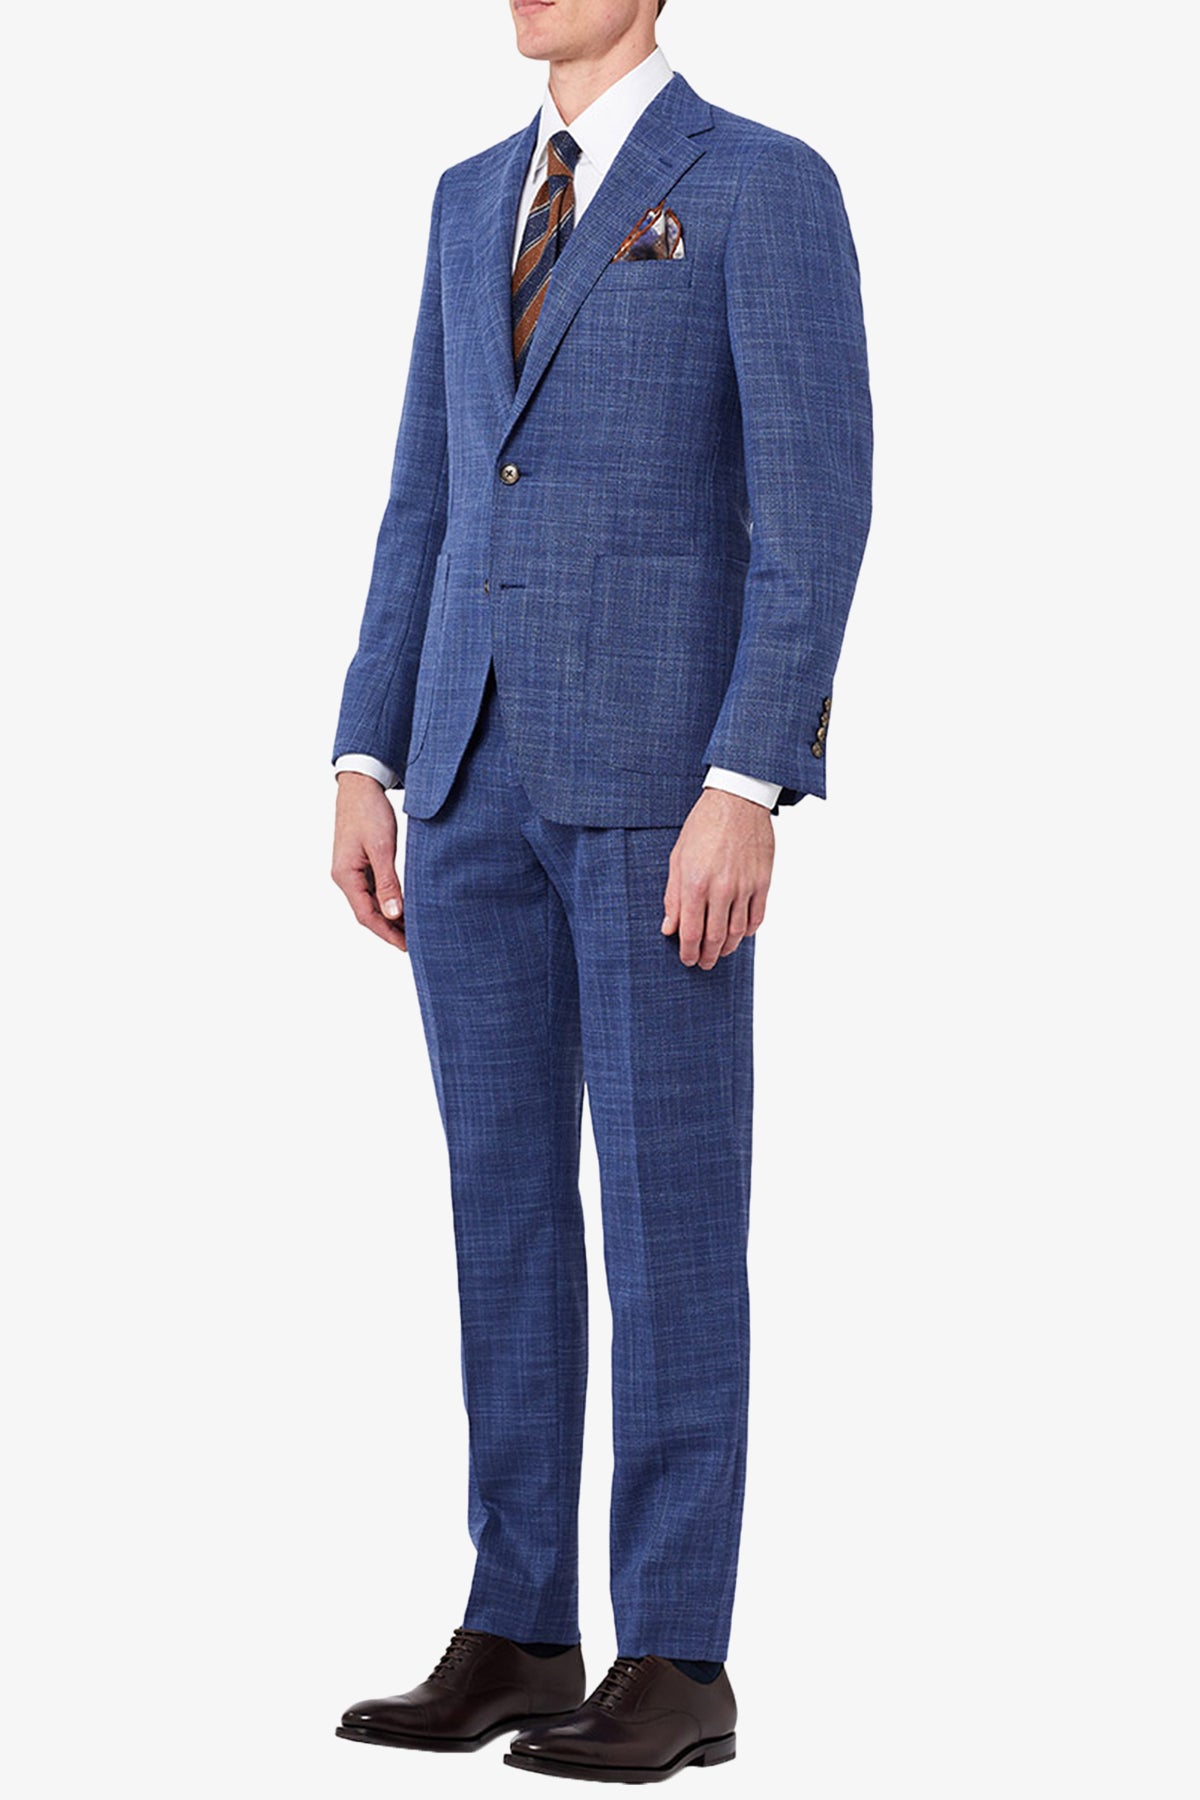 Henderson - Blue Suit